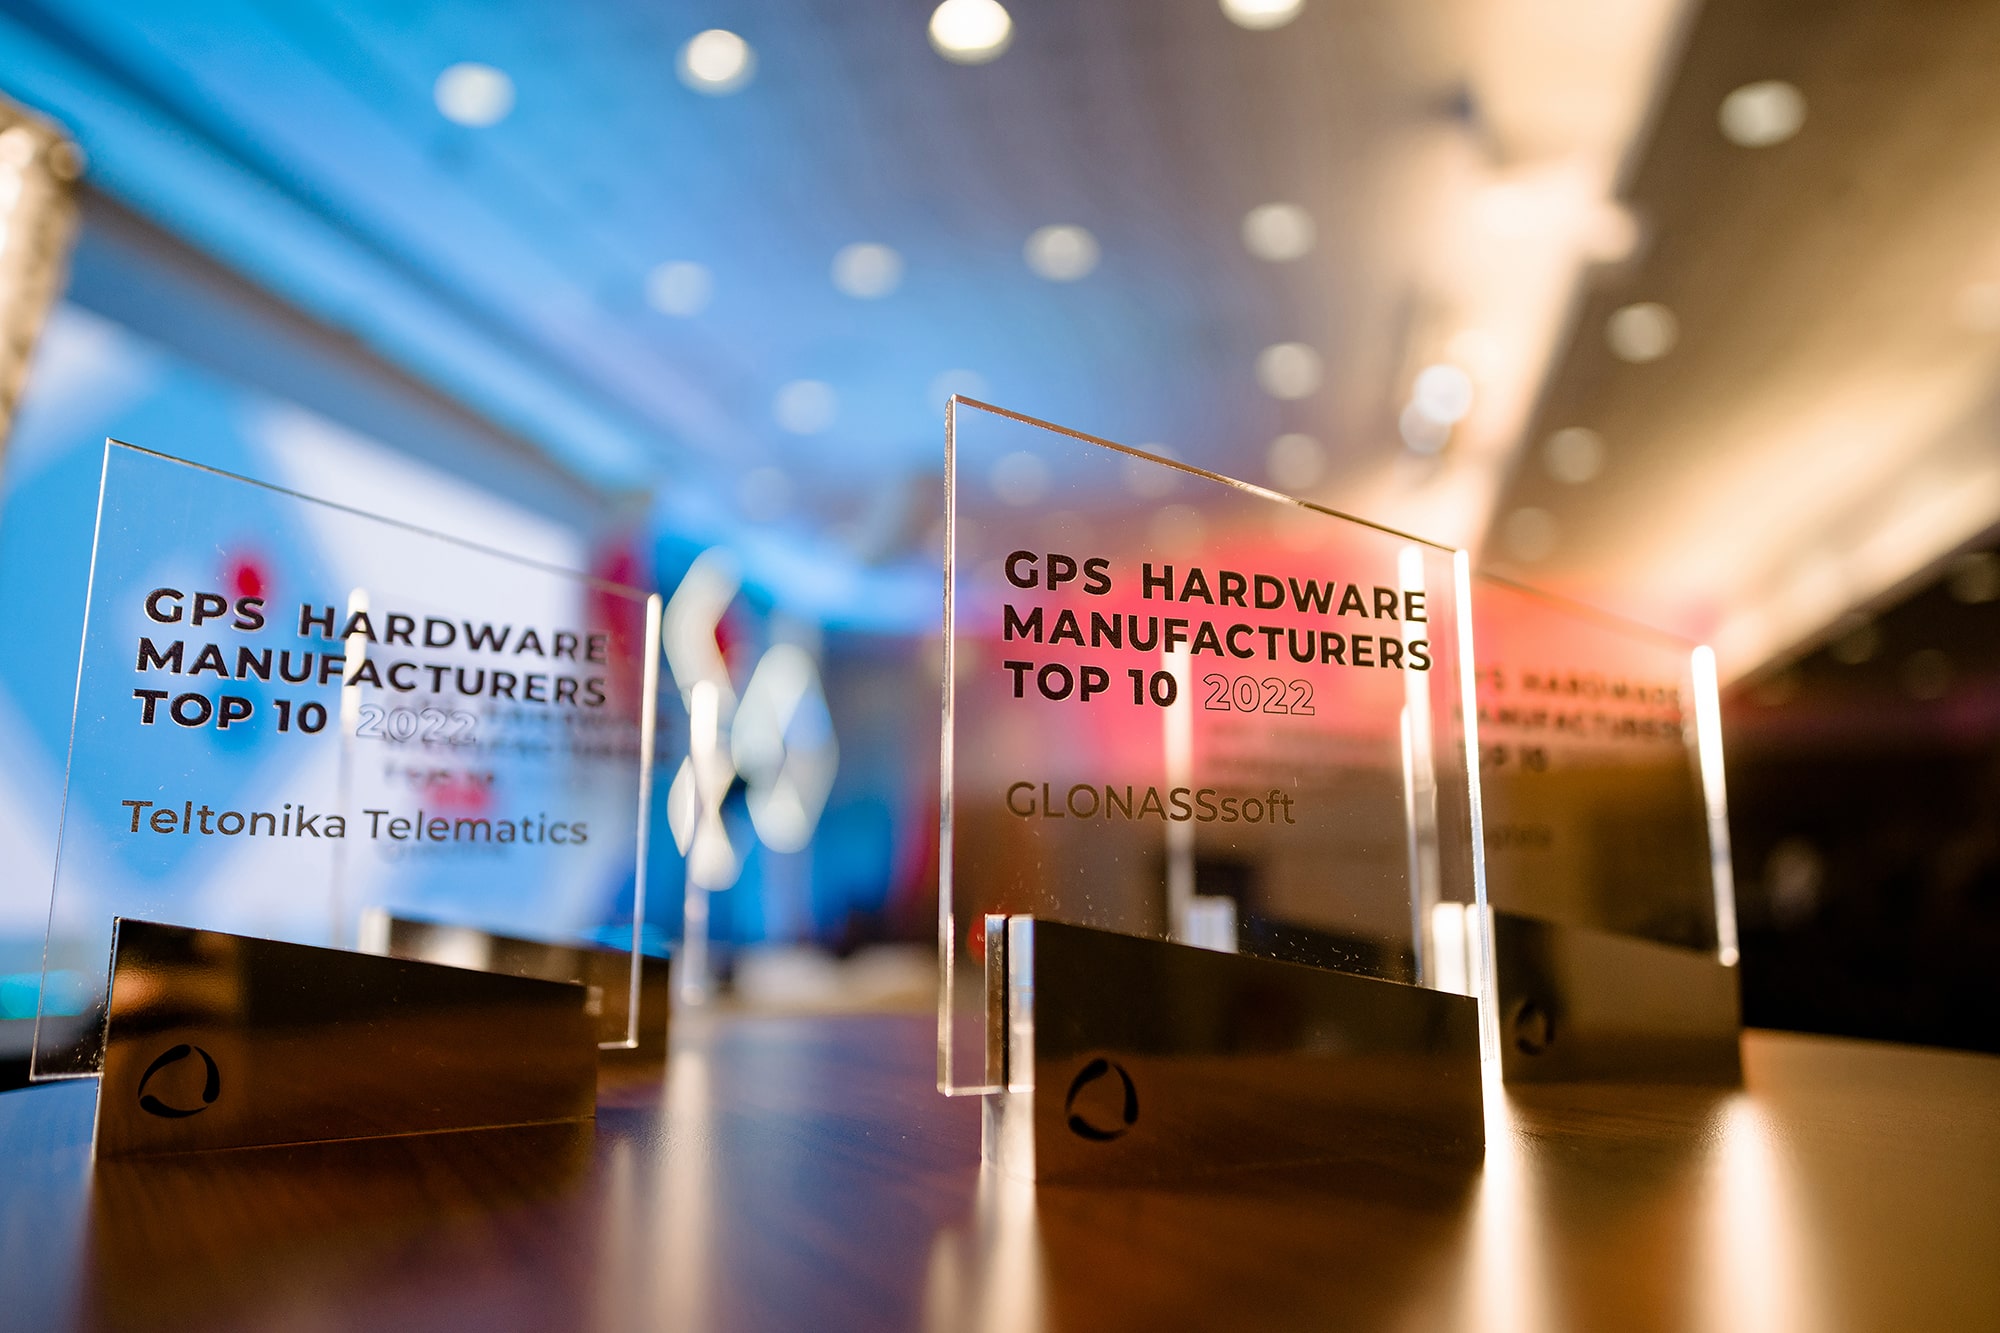 GPS Hardware Manufacturers Top 10 awards